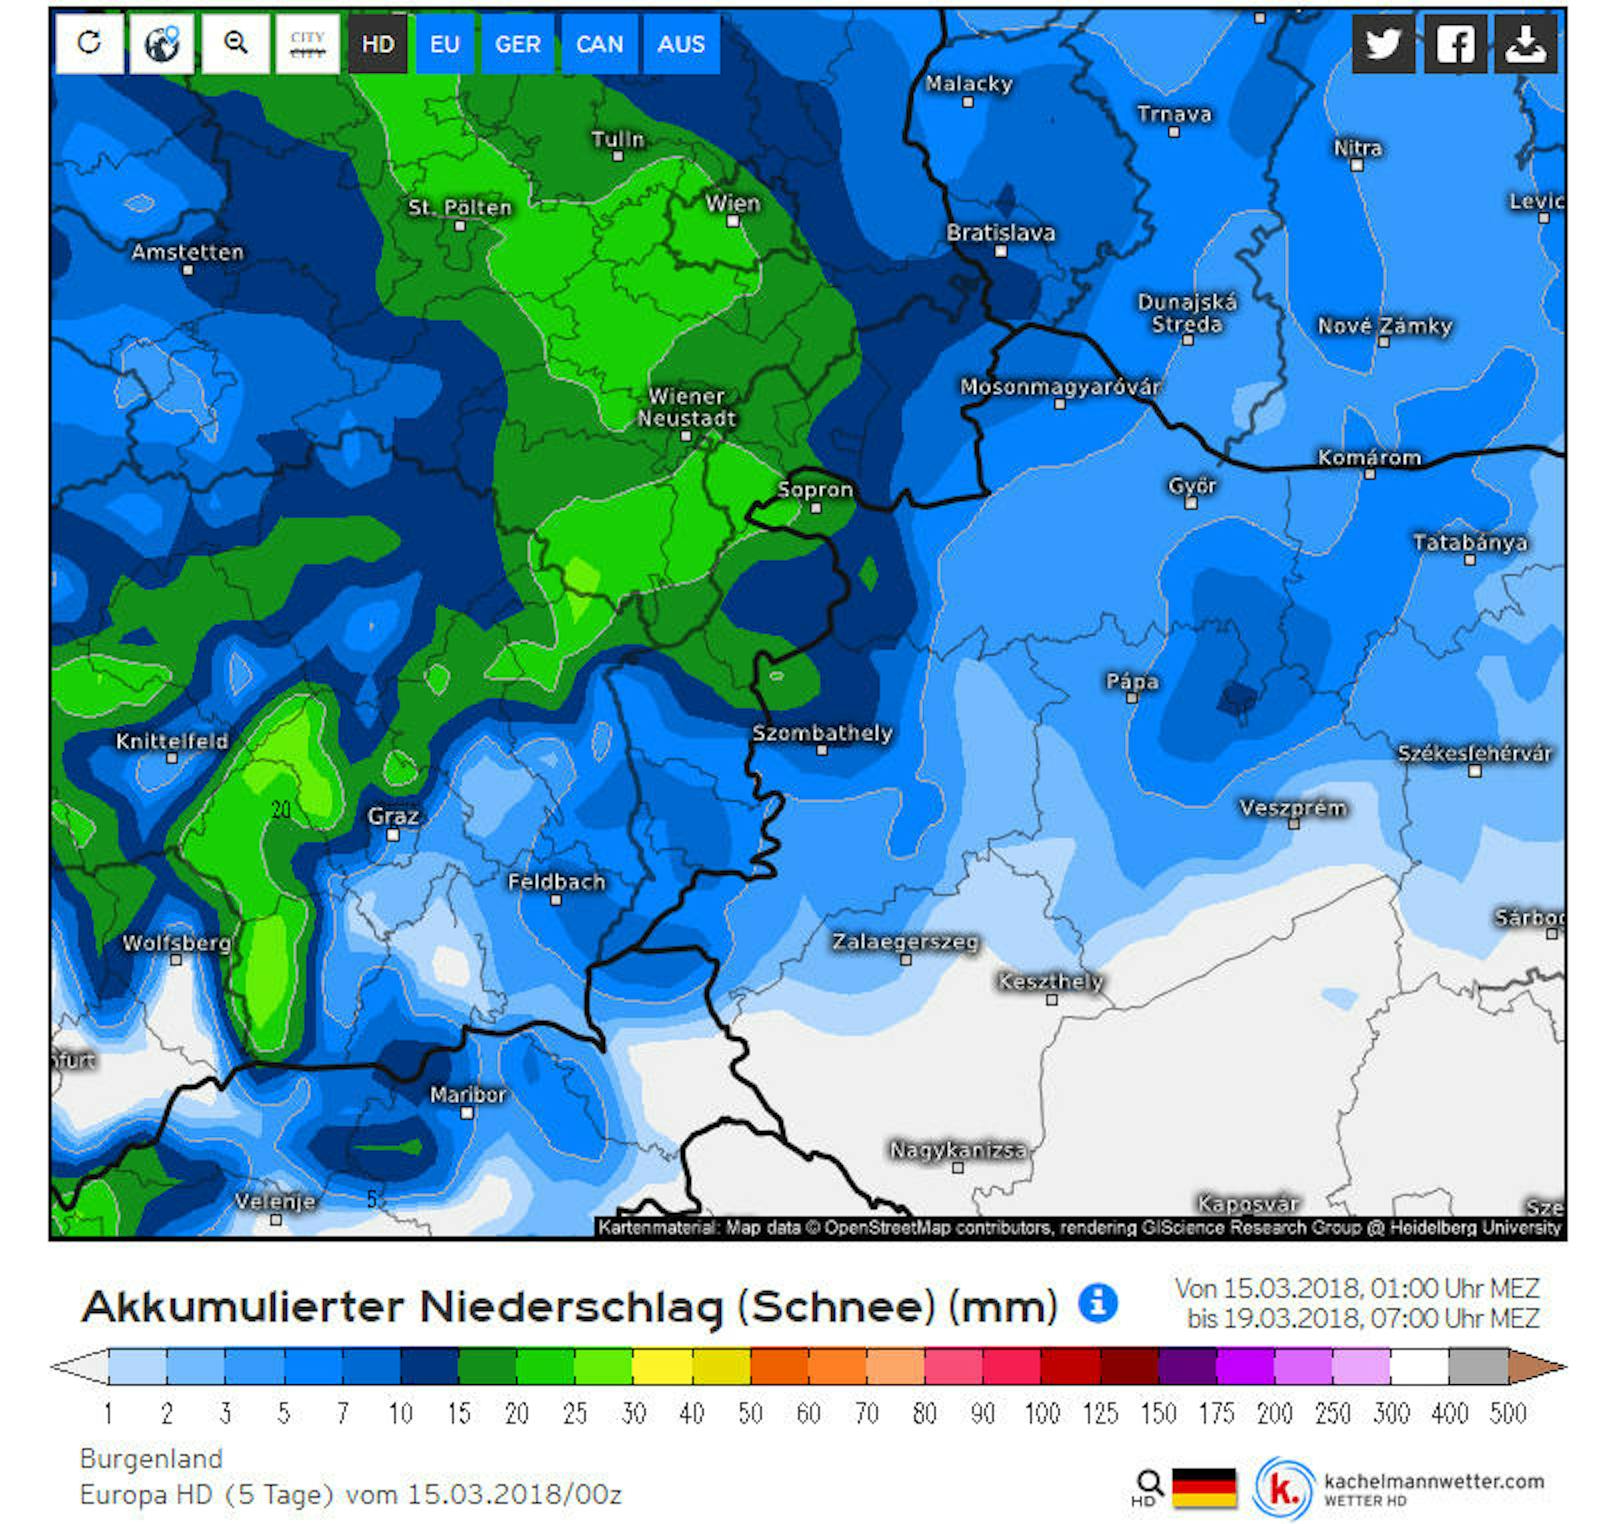 <b>Burgenland:</b> Niederschlagssumme (Schnee) in Millimeter im Zeitraum Donnerstag 15. bis Montag 19. März 2018.